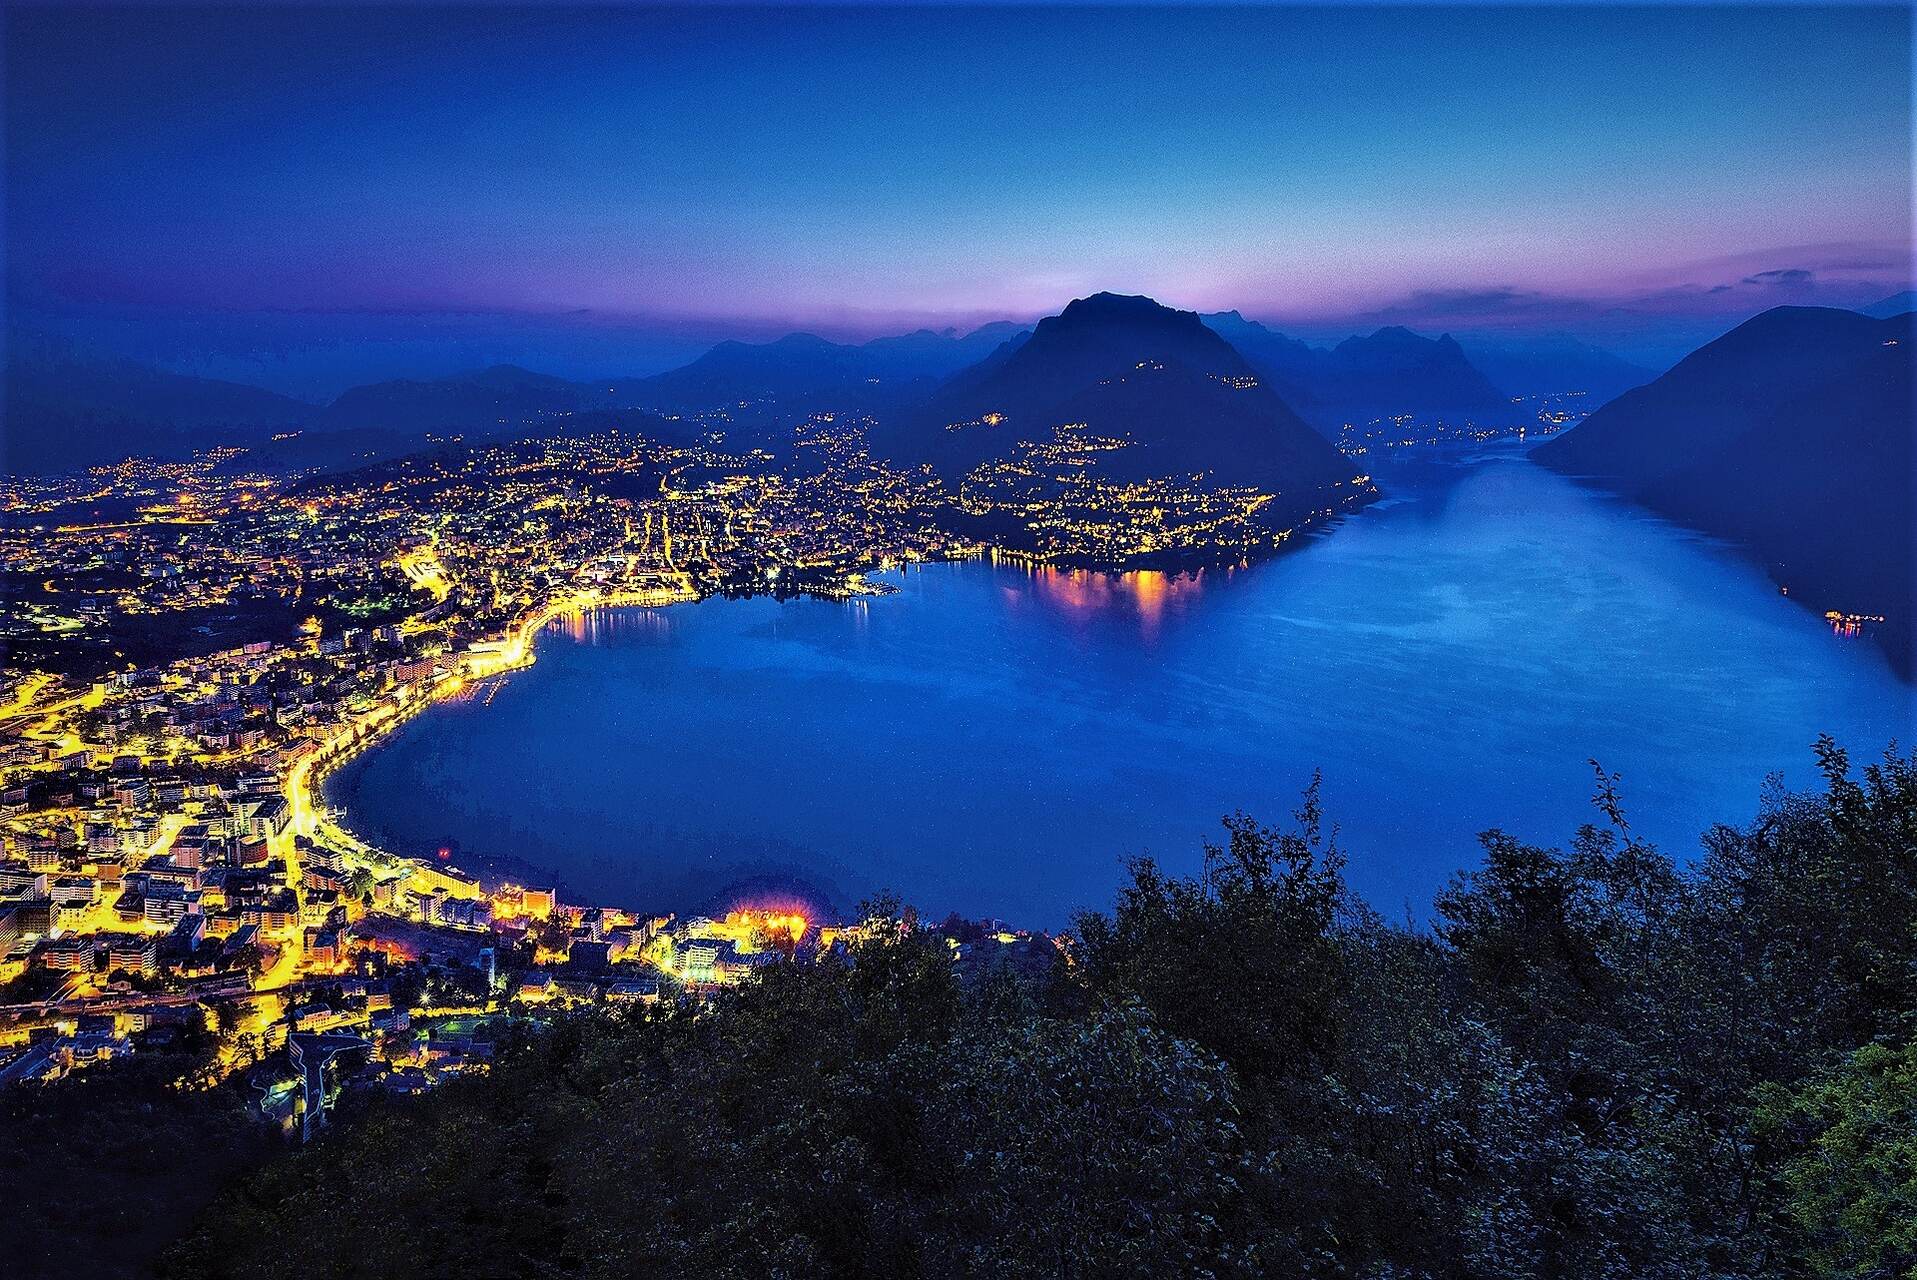 Ente Turistico del Lugano: mesto Lugano v kantonu Ticino, videno z Monte San Salvatore